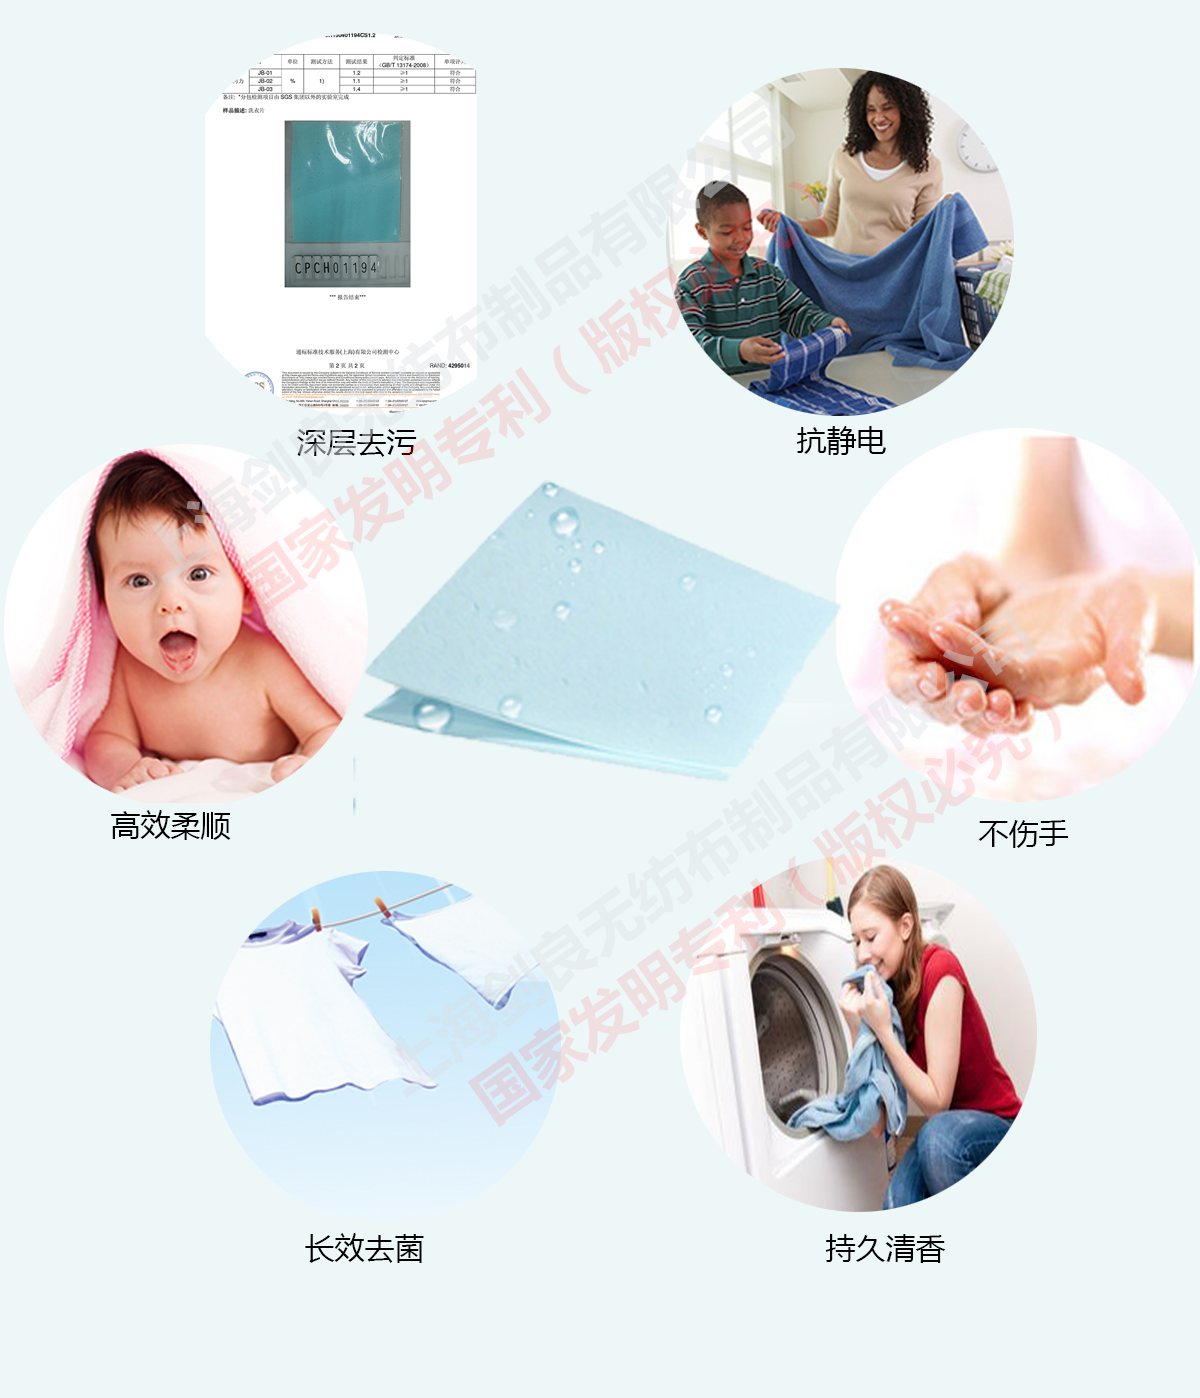 洗衣片OEM/ODM_洗衣片功效_上海剑良无纺布制品有限公司